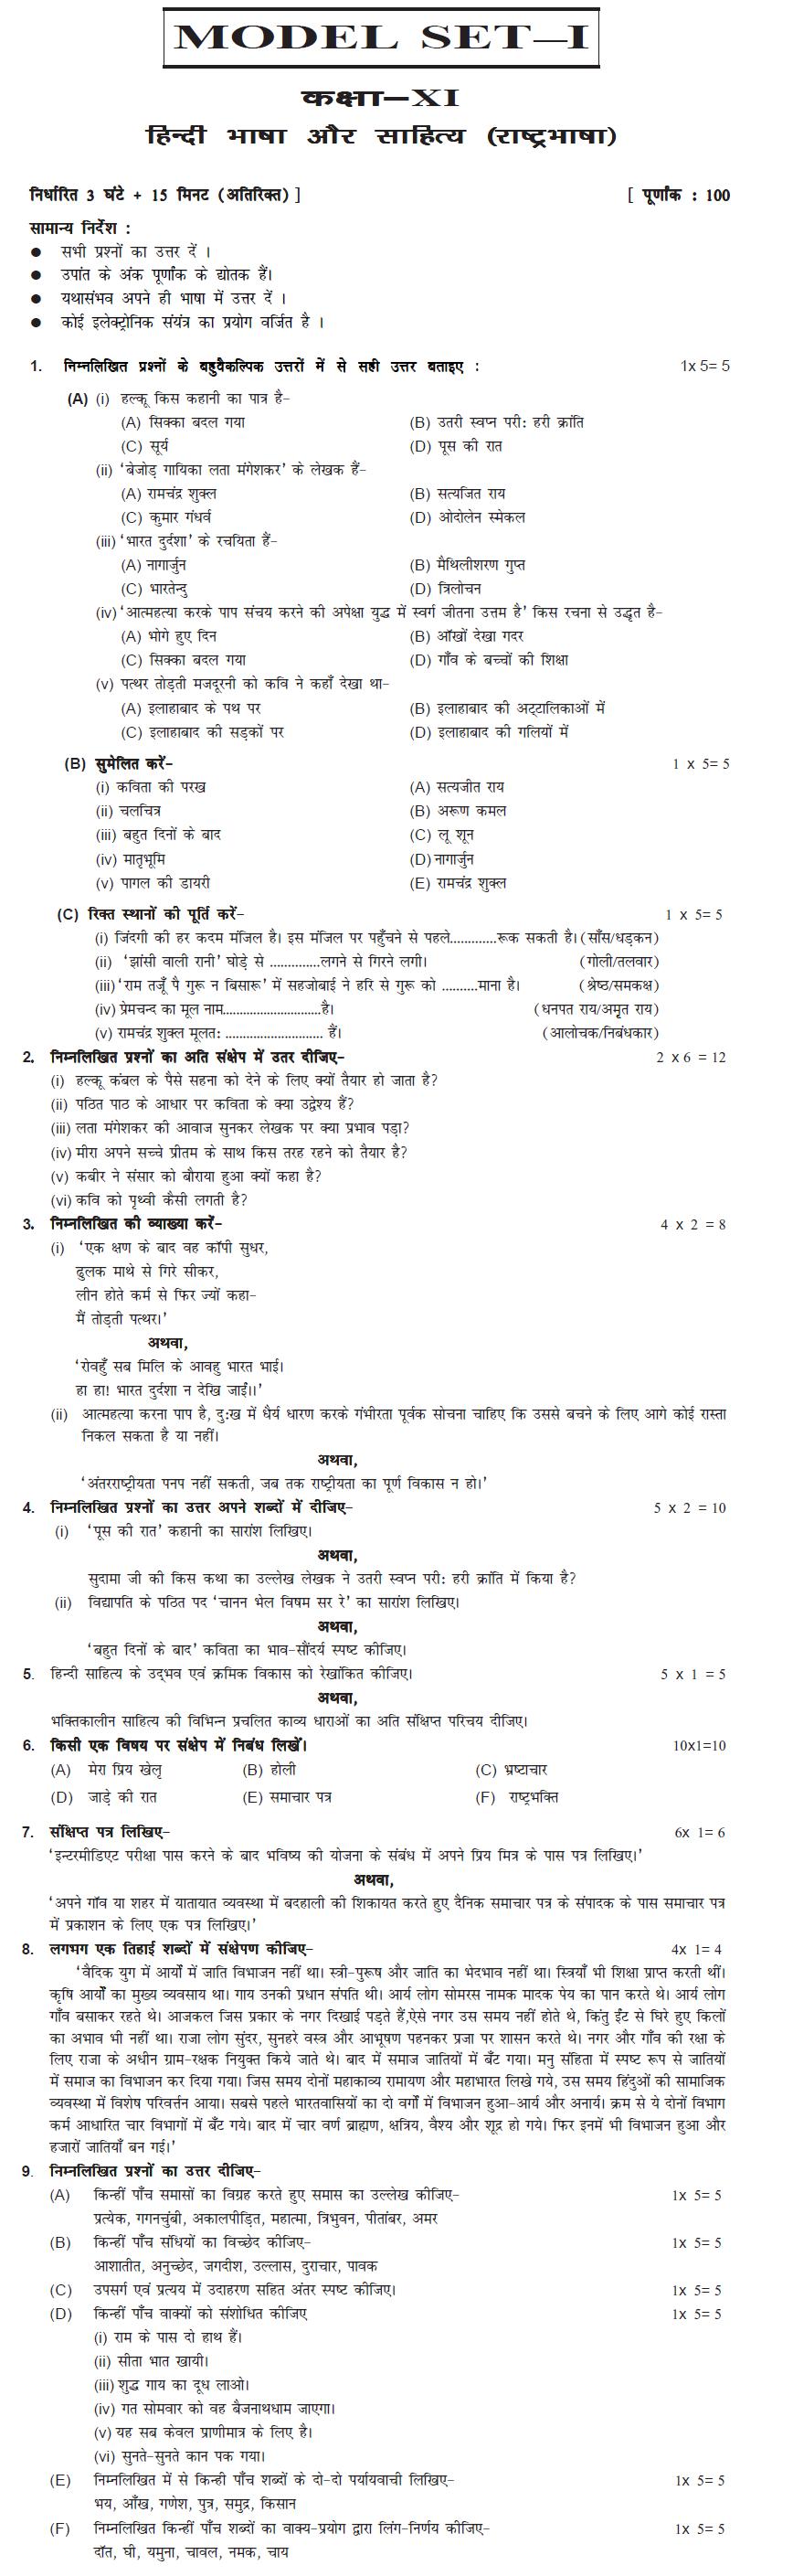 Bihar Board Class XI Humanities Model Question Papers - Hindi